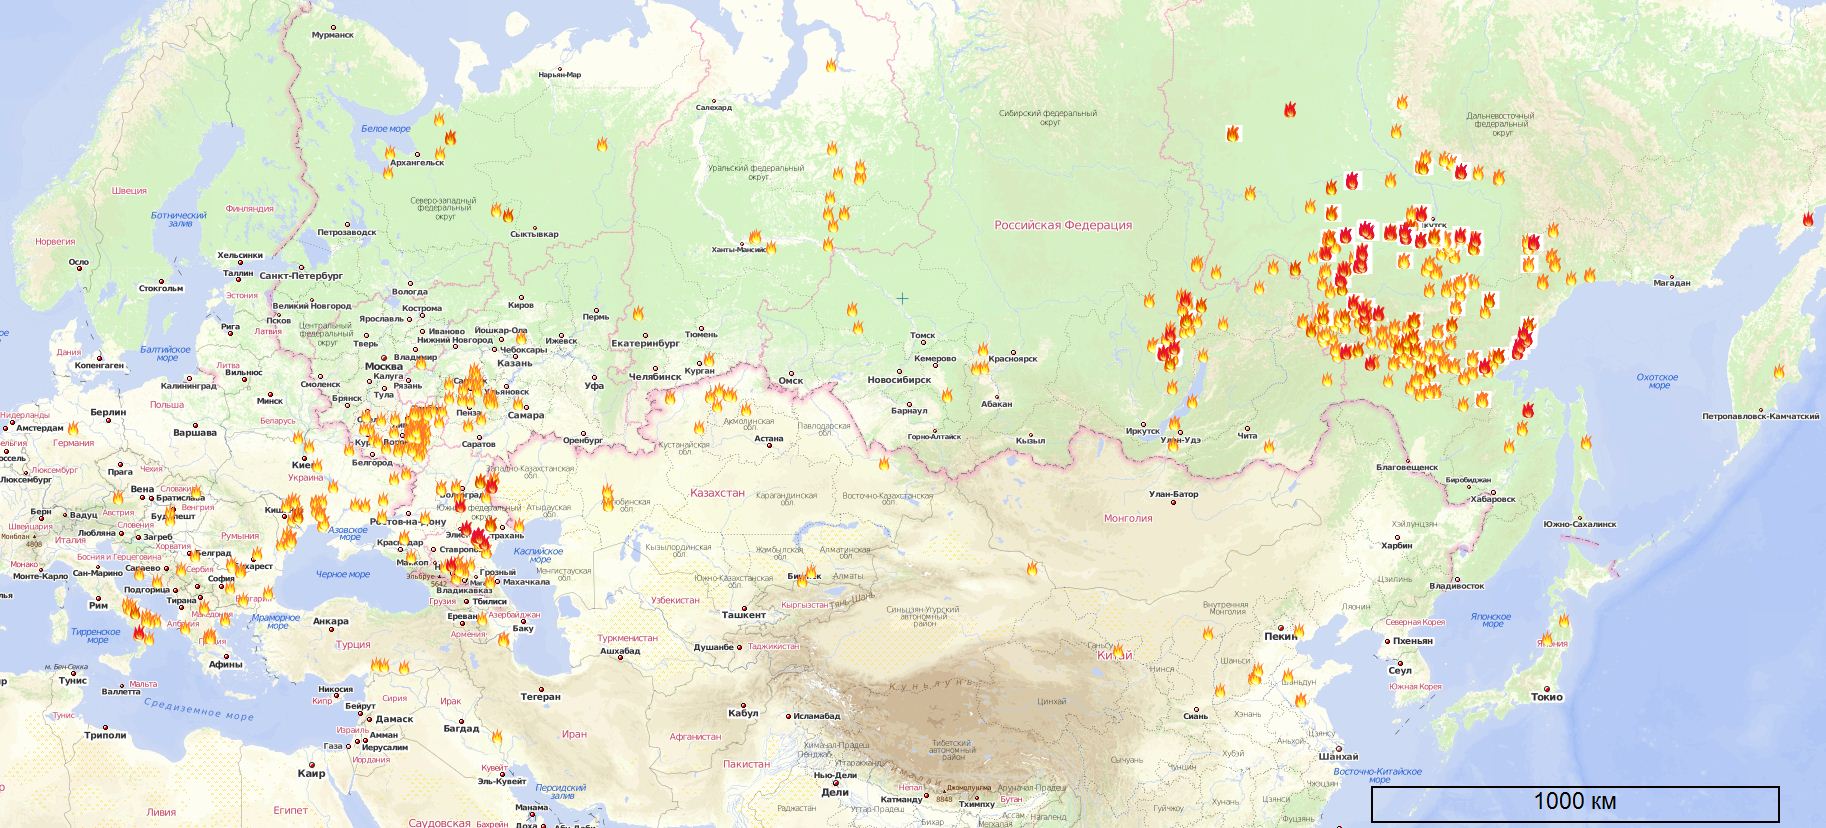 Карта лесных пожаров в России, Азии, Европе на 16.07.2011